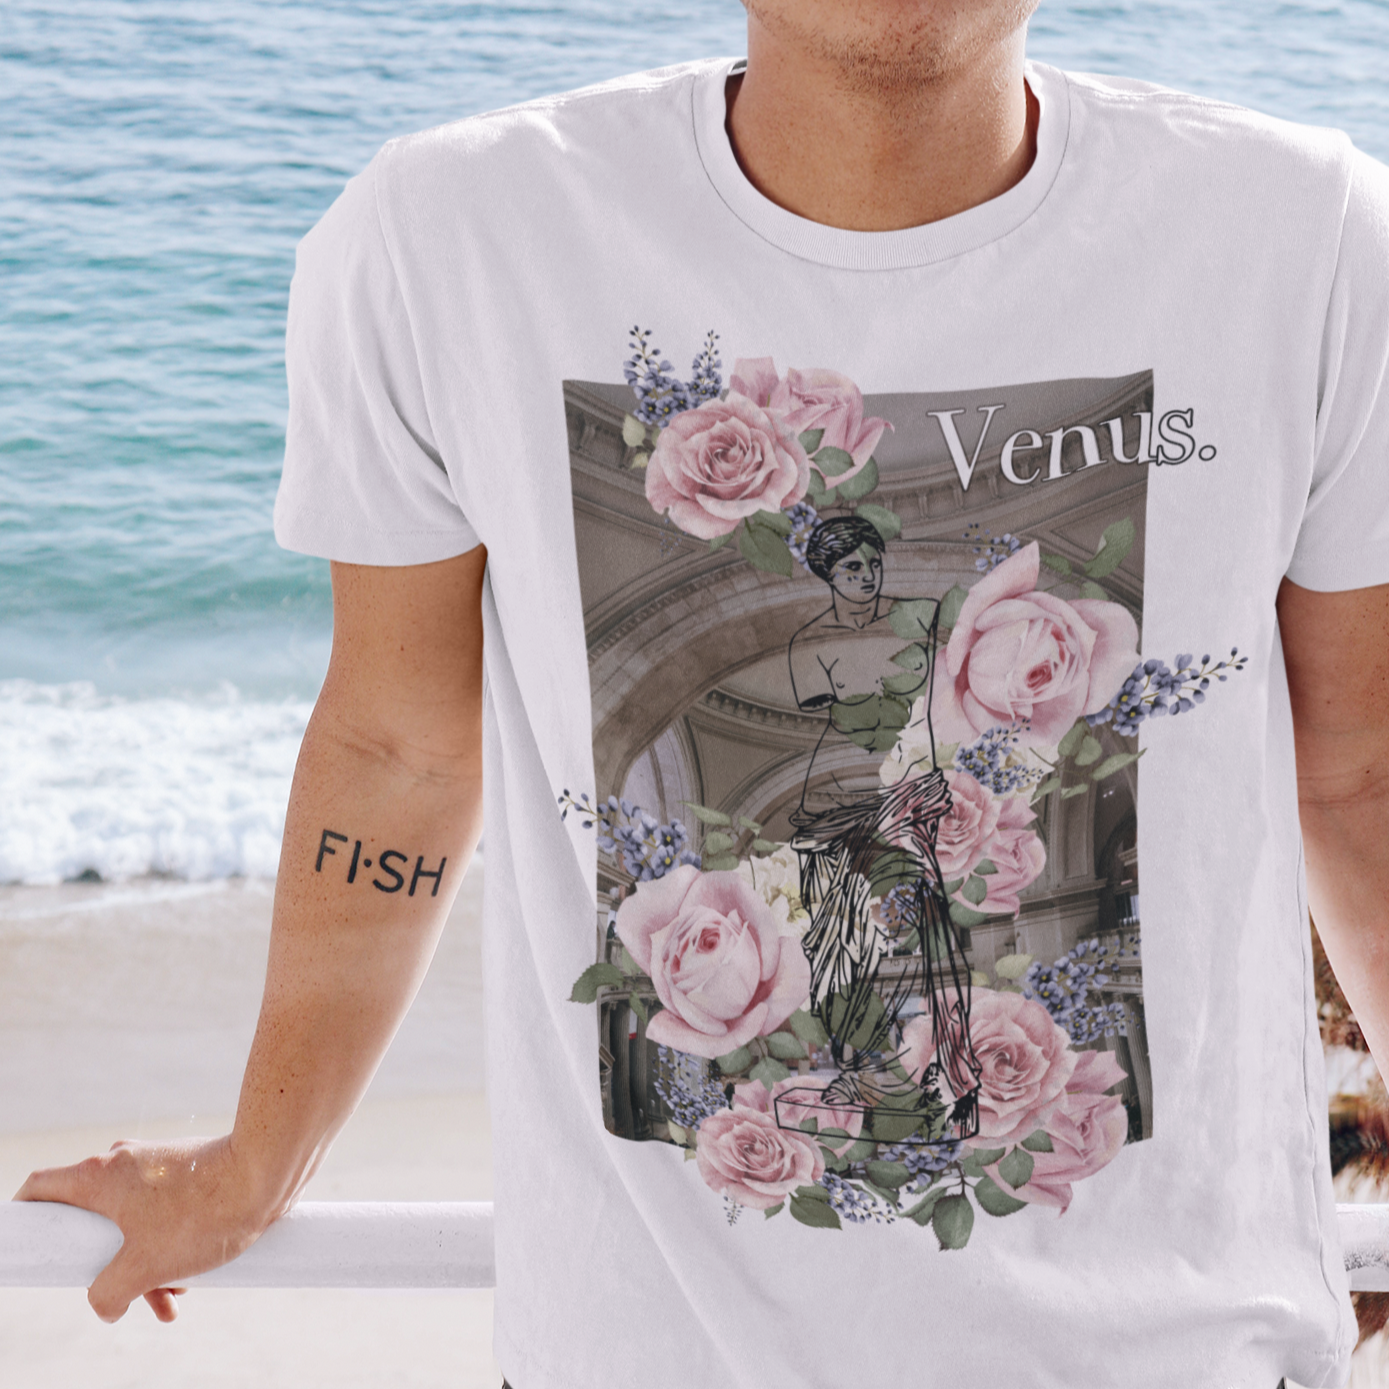 Venus & Flowers shirt